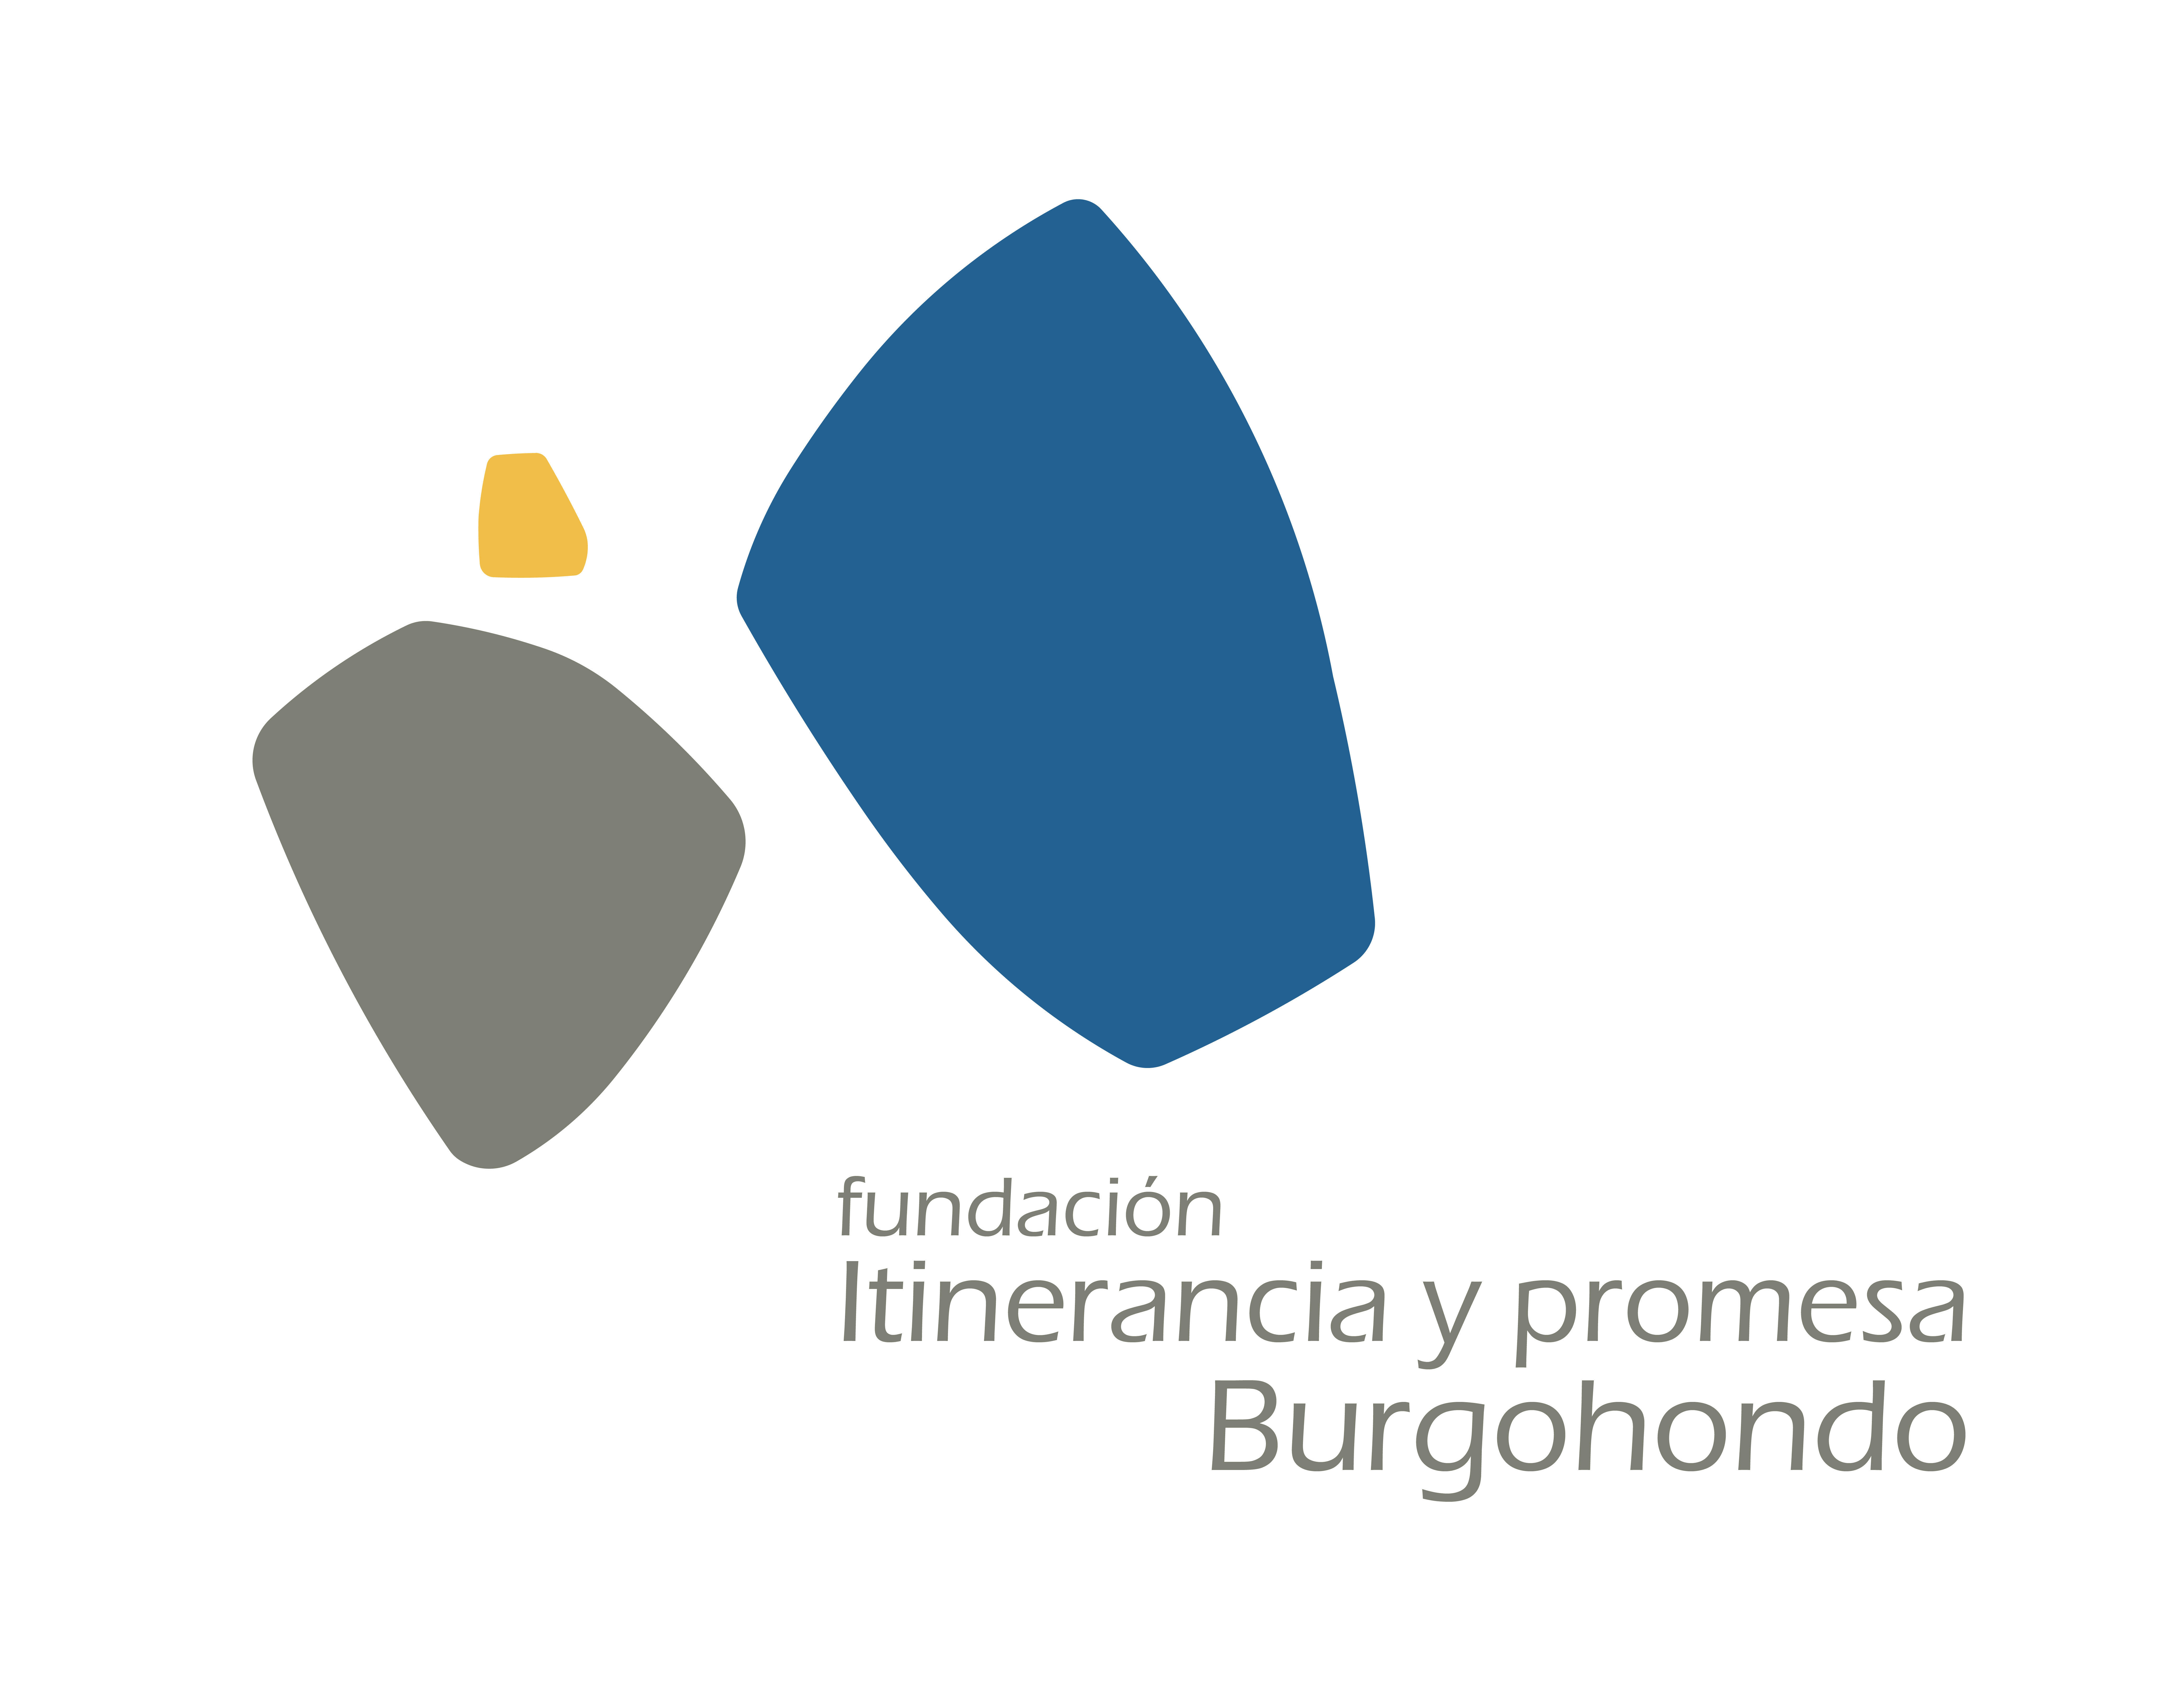 LOGO Fundación Itinerancia y Promesa Burgohondo by Eneko Besa Díaz - Creative Work - $i